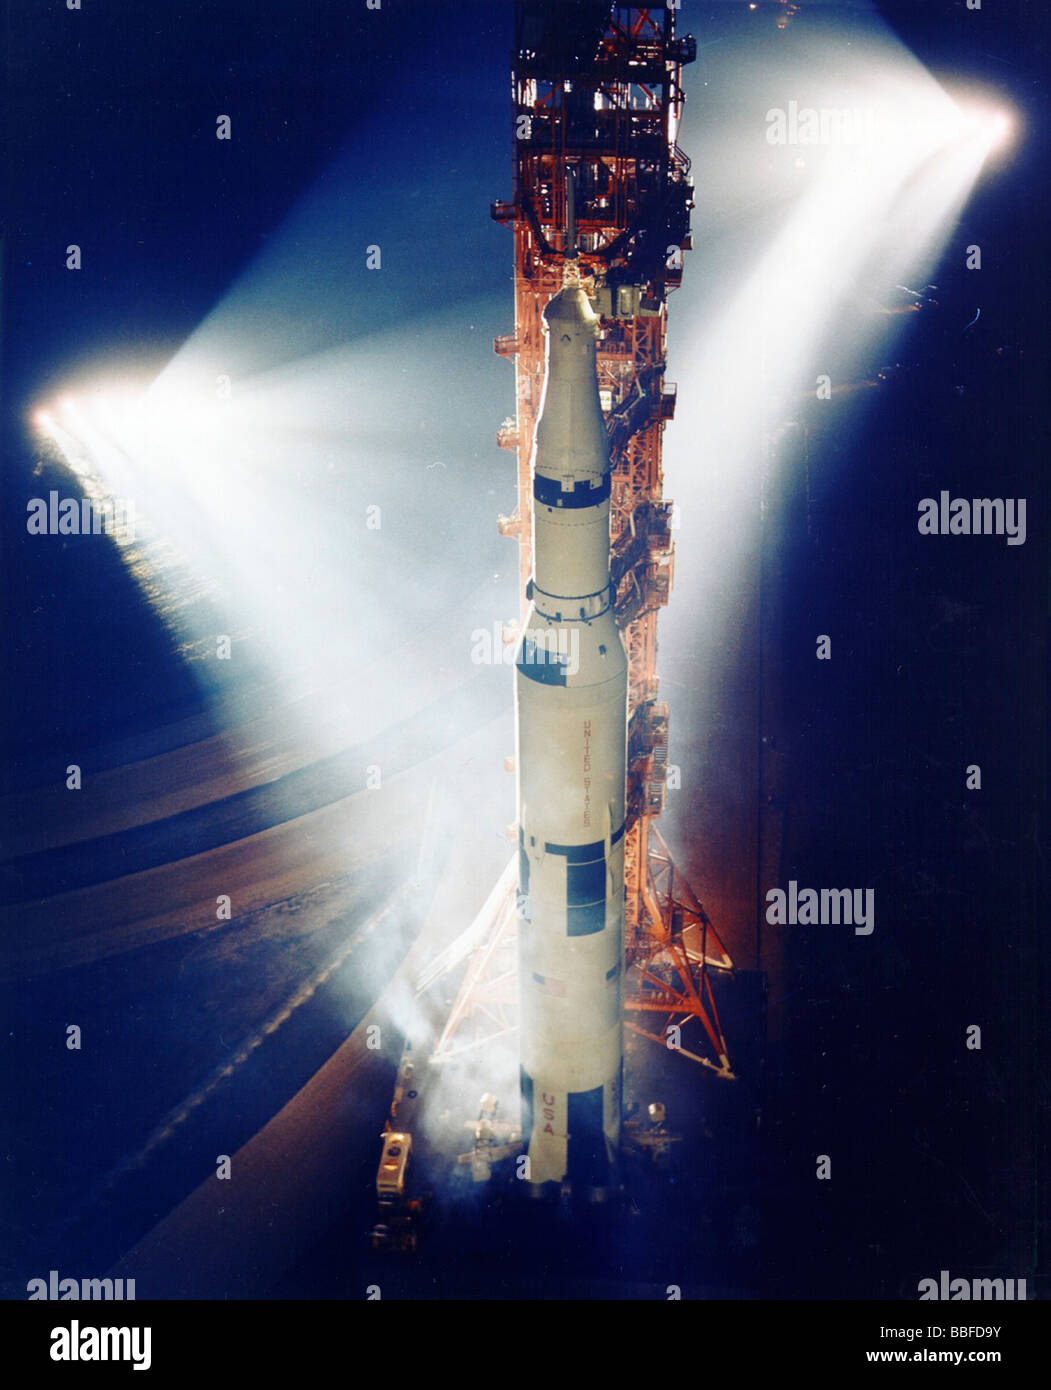 NASA Saturn V-Rakete auf der Startrampe in Licht getaucht Stockfoto